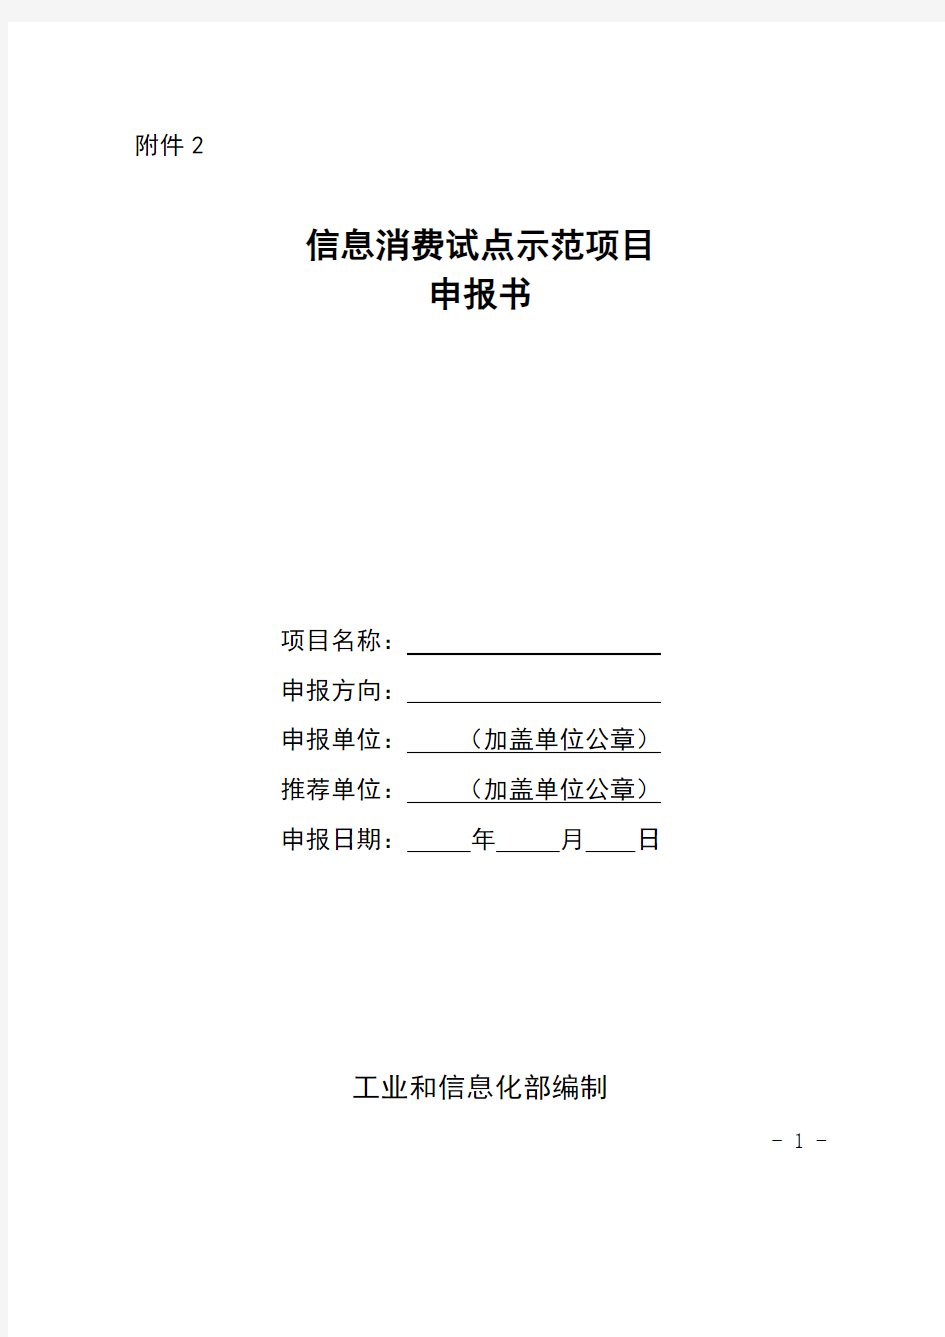 信息消费试点示范项目申报书-中华人民共和国工业和信息化部